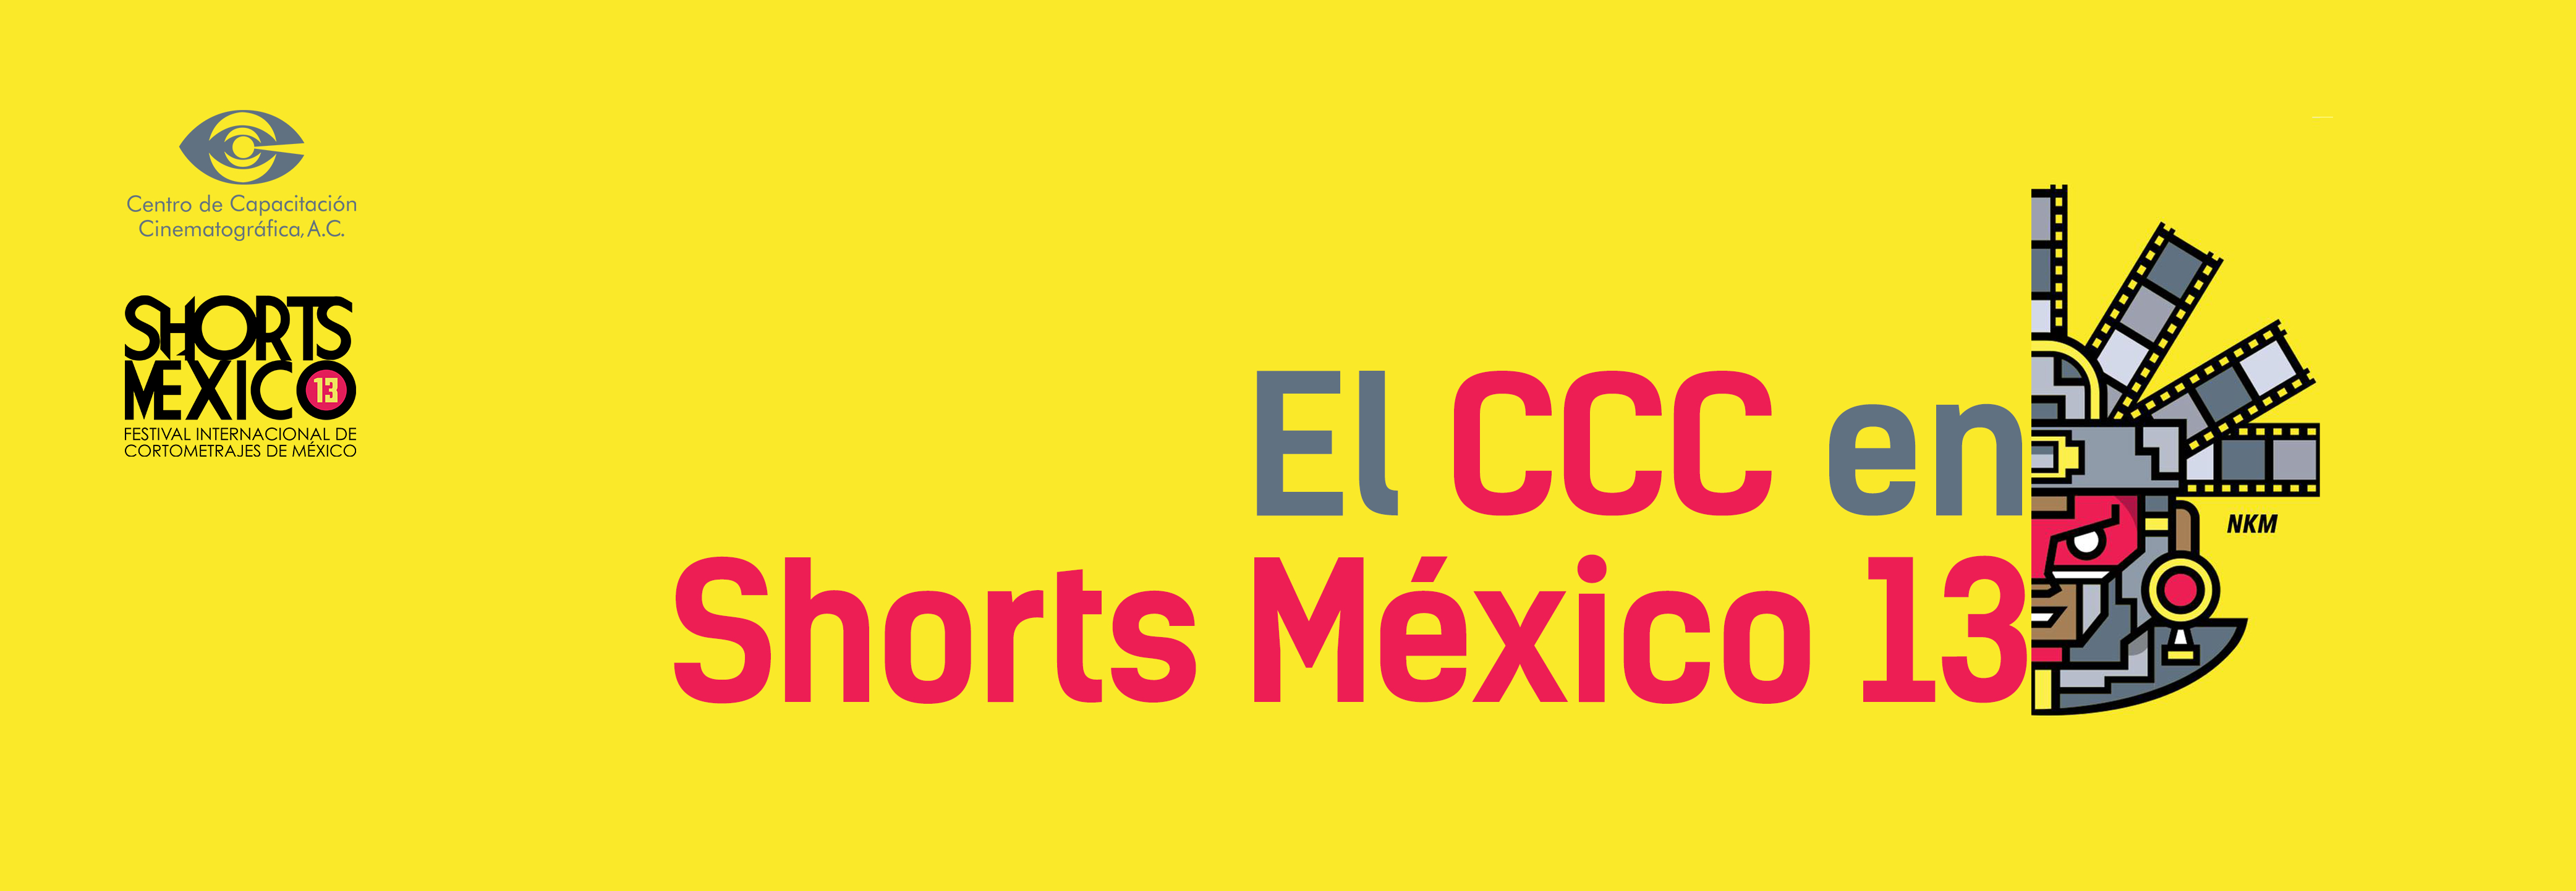 shorts mexico 2018